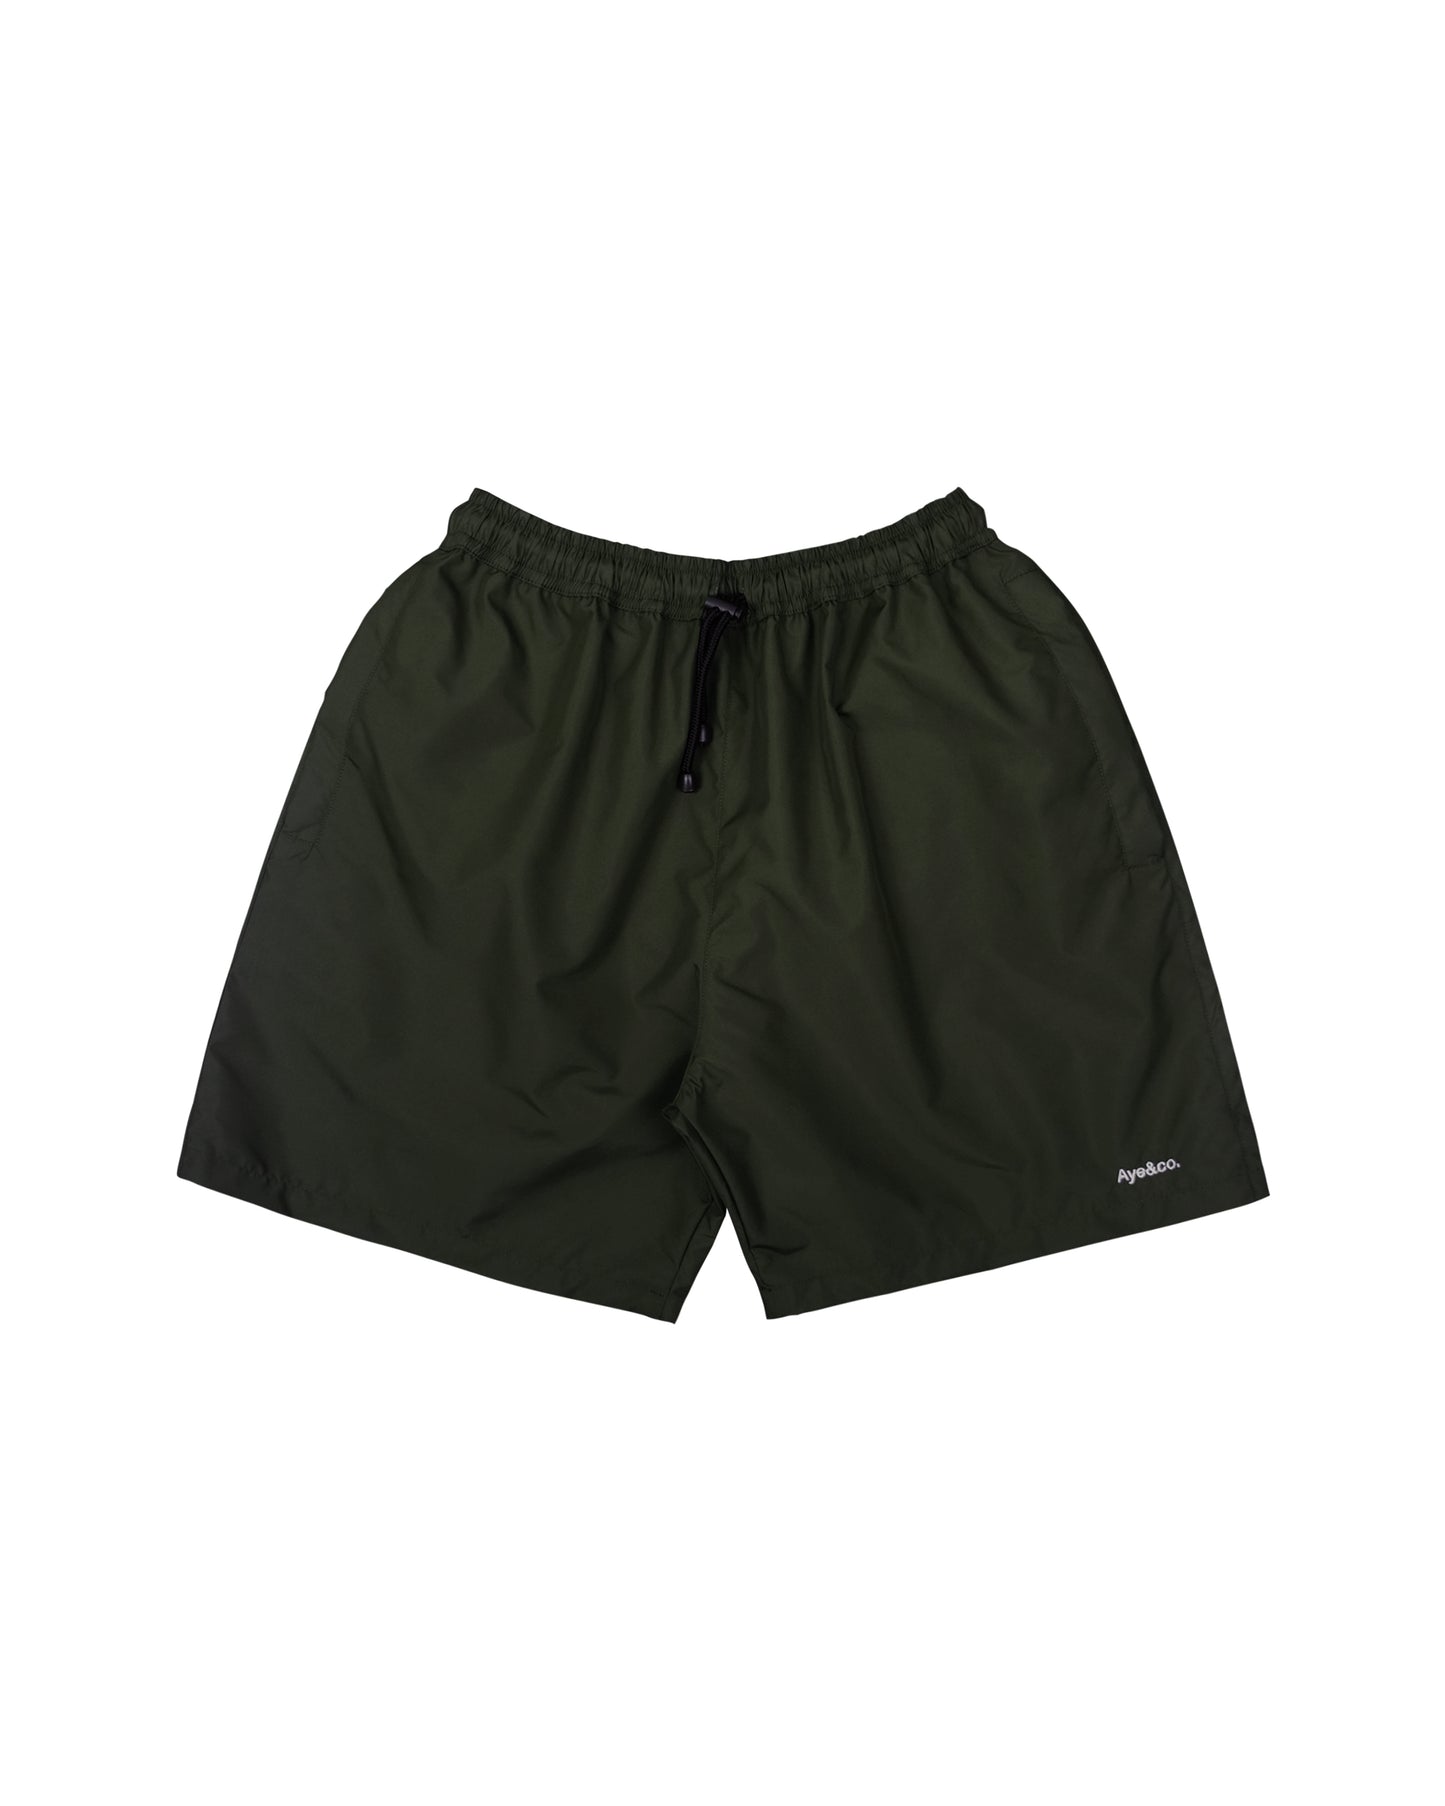 Lax Green Board Shorts